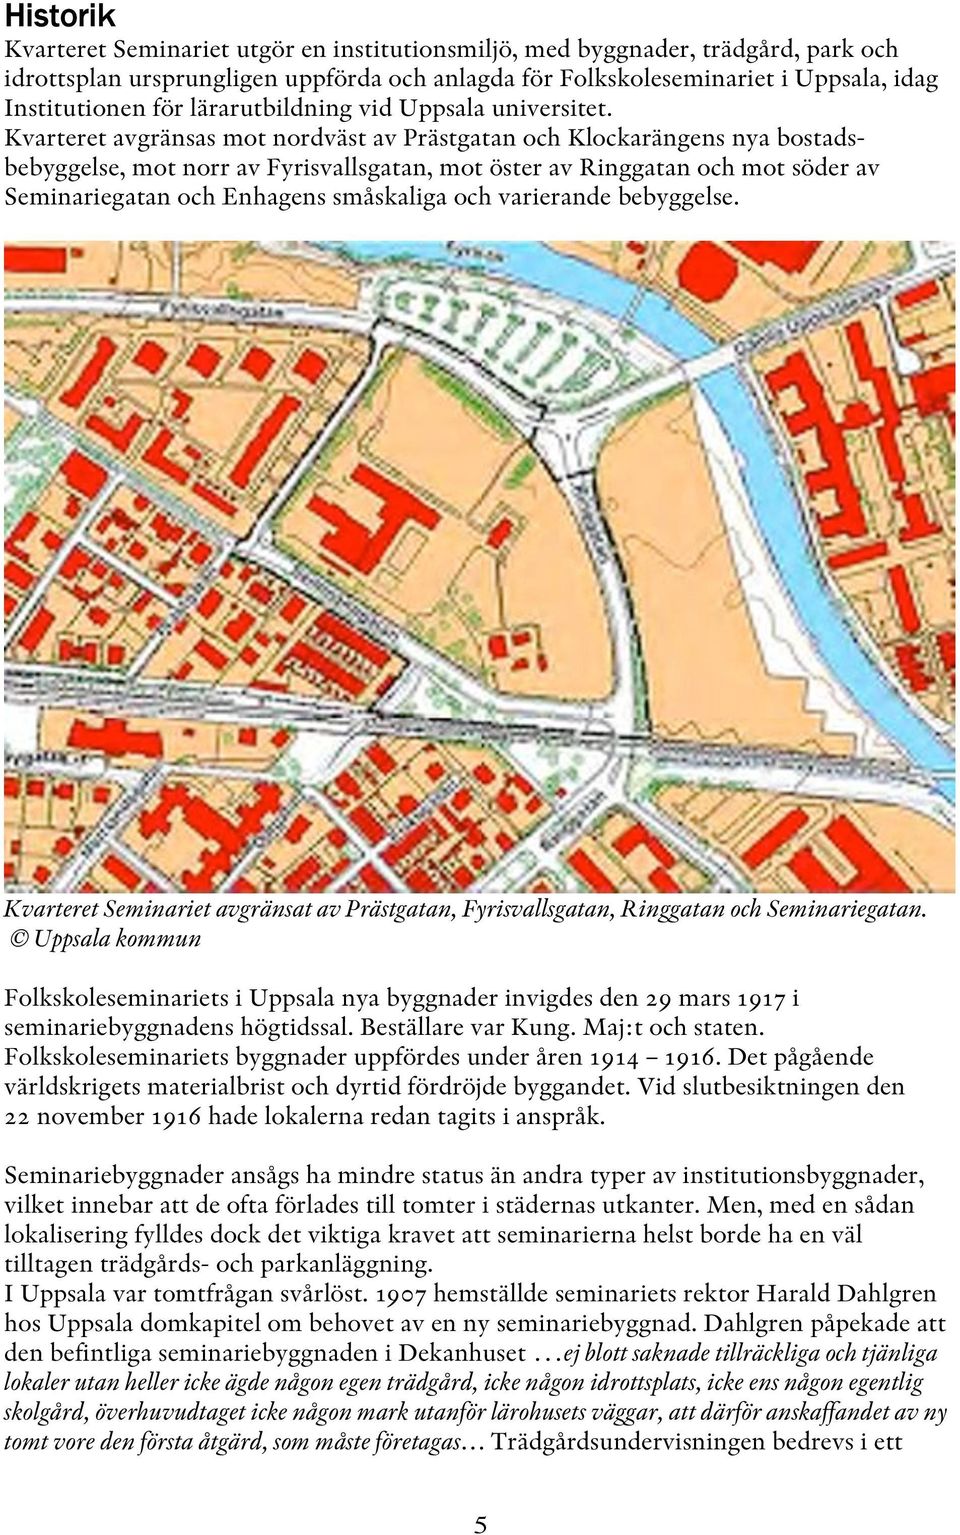 Kvarteret avgränsas mot nordväst av Prästgatan och Klockarängens nya bostadsbebyggelse, mot norr av Fyrisvallsgatan, mot öster av Ringgatan och mot söder av Seminariegatan och Enhagens småskaliga och